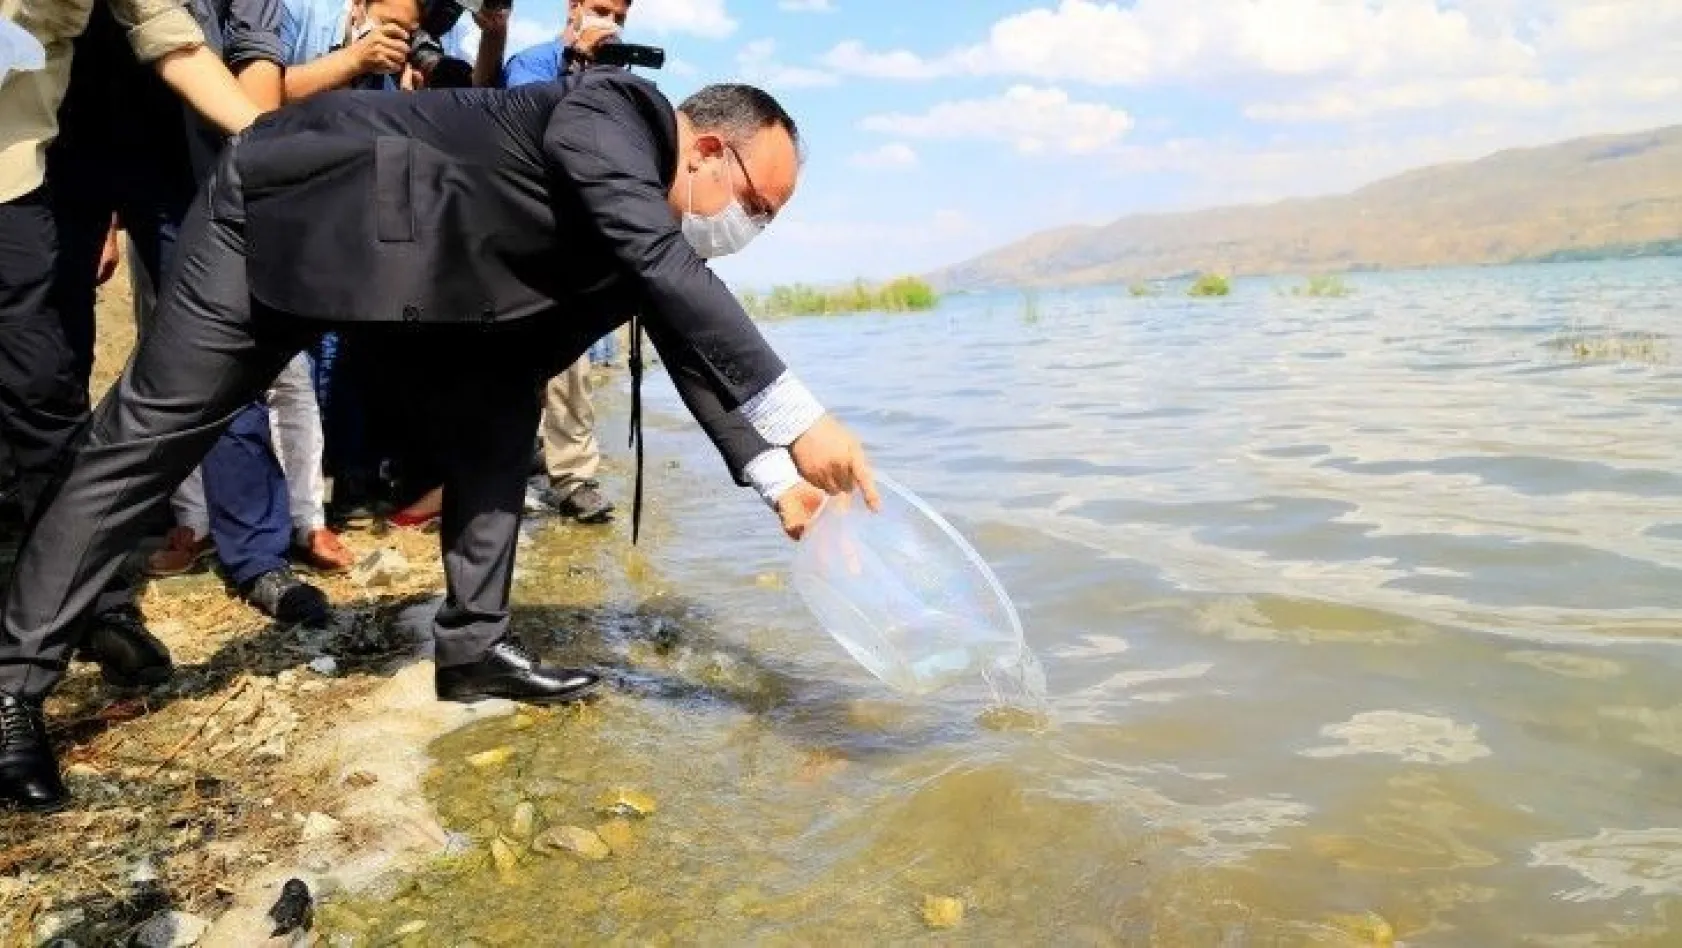 420 bin adet siraz balığı Hazar Gölü'ne bırakıldı